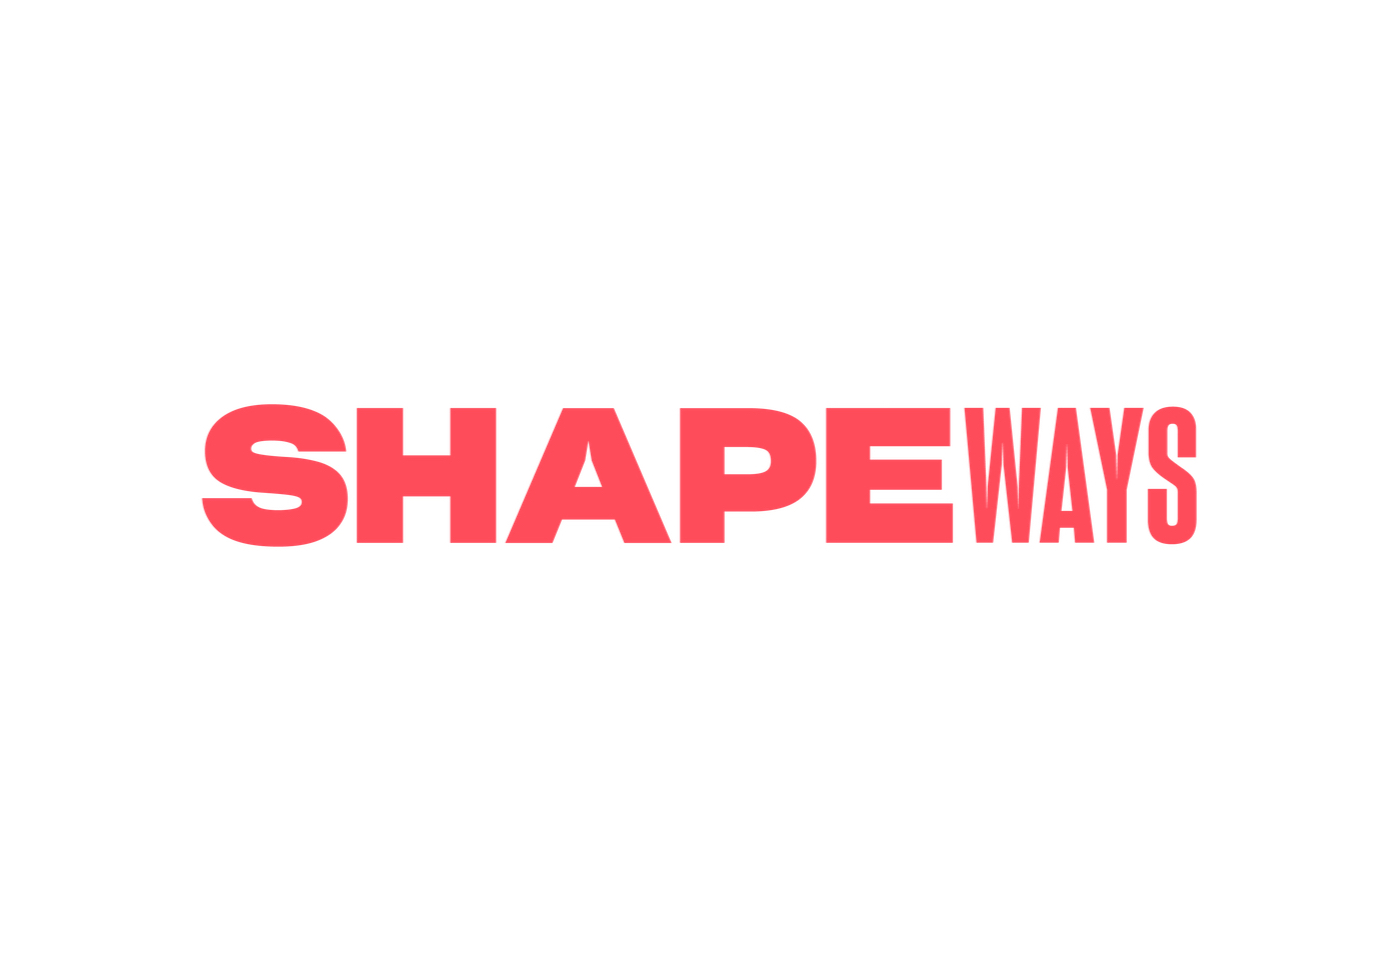  Shapeways tweaks their pricing [Source: Shapeways] 